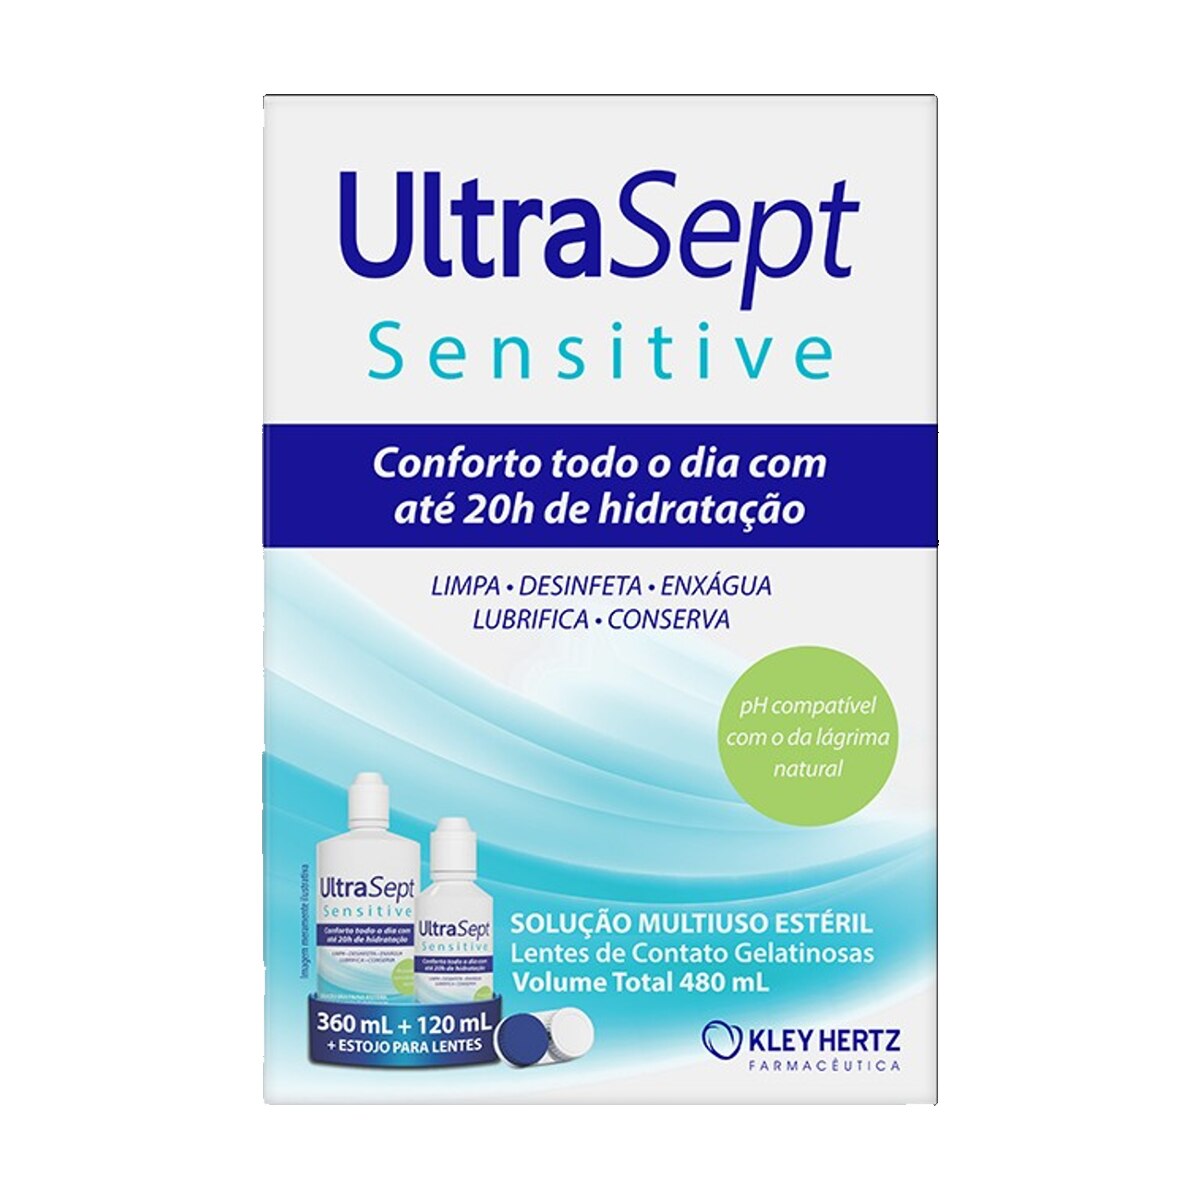 Ultrasept Sensitive Solucao para Lentes 360ml + 120ml + Estojo